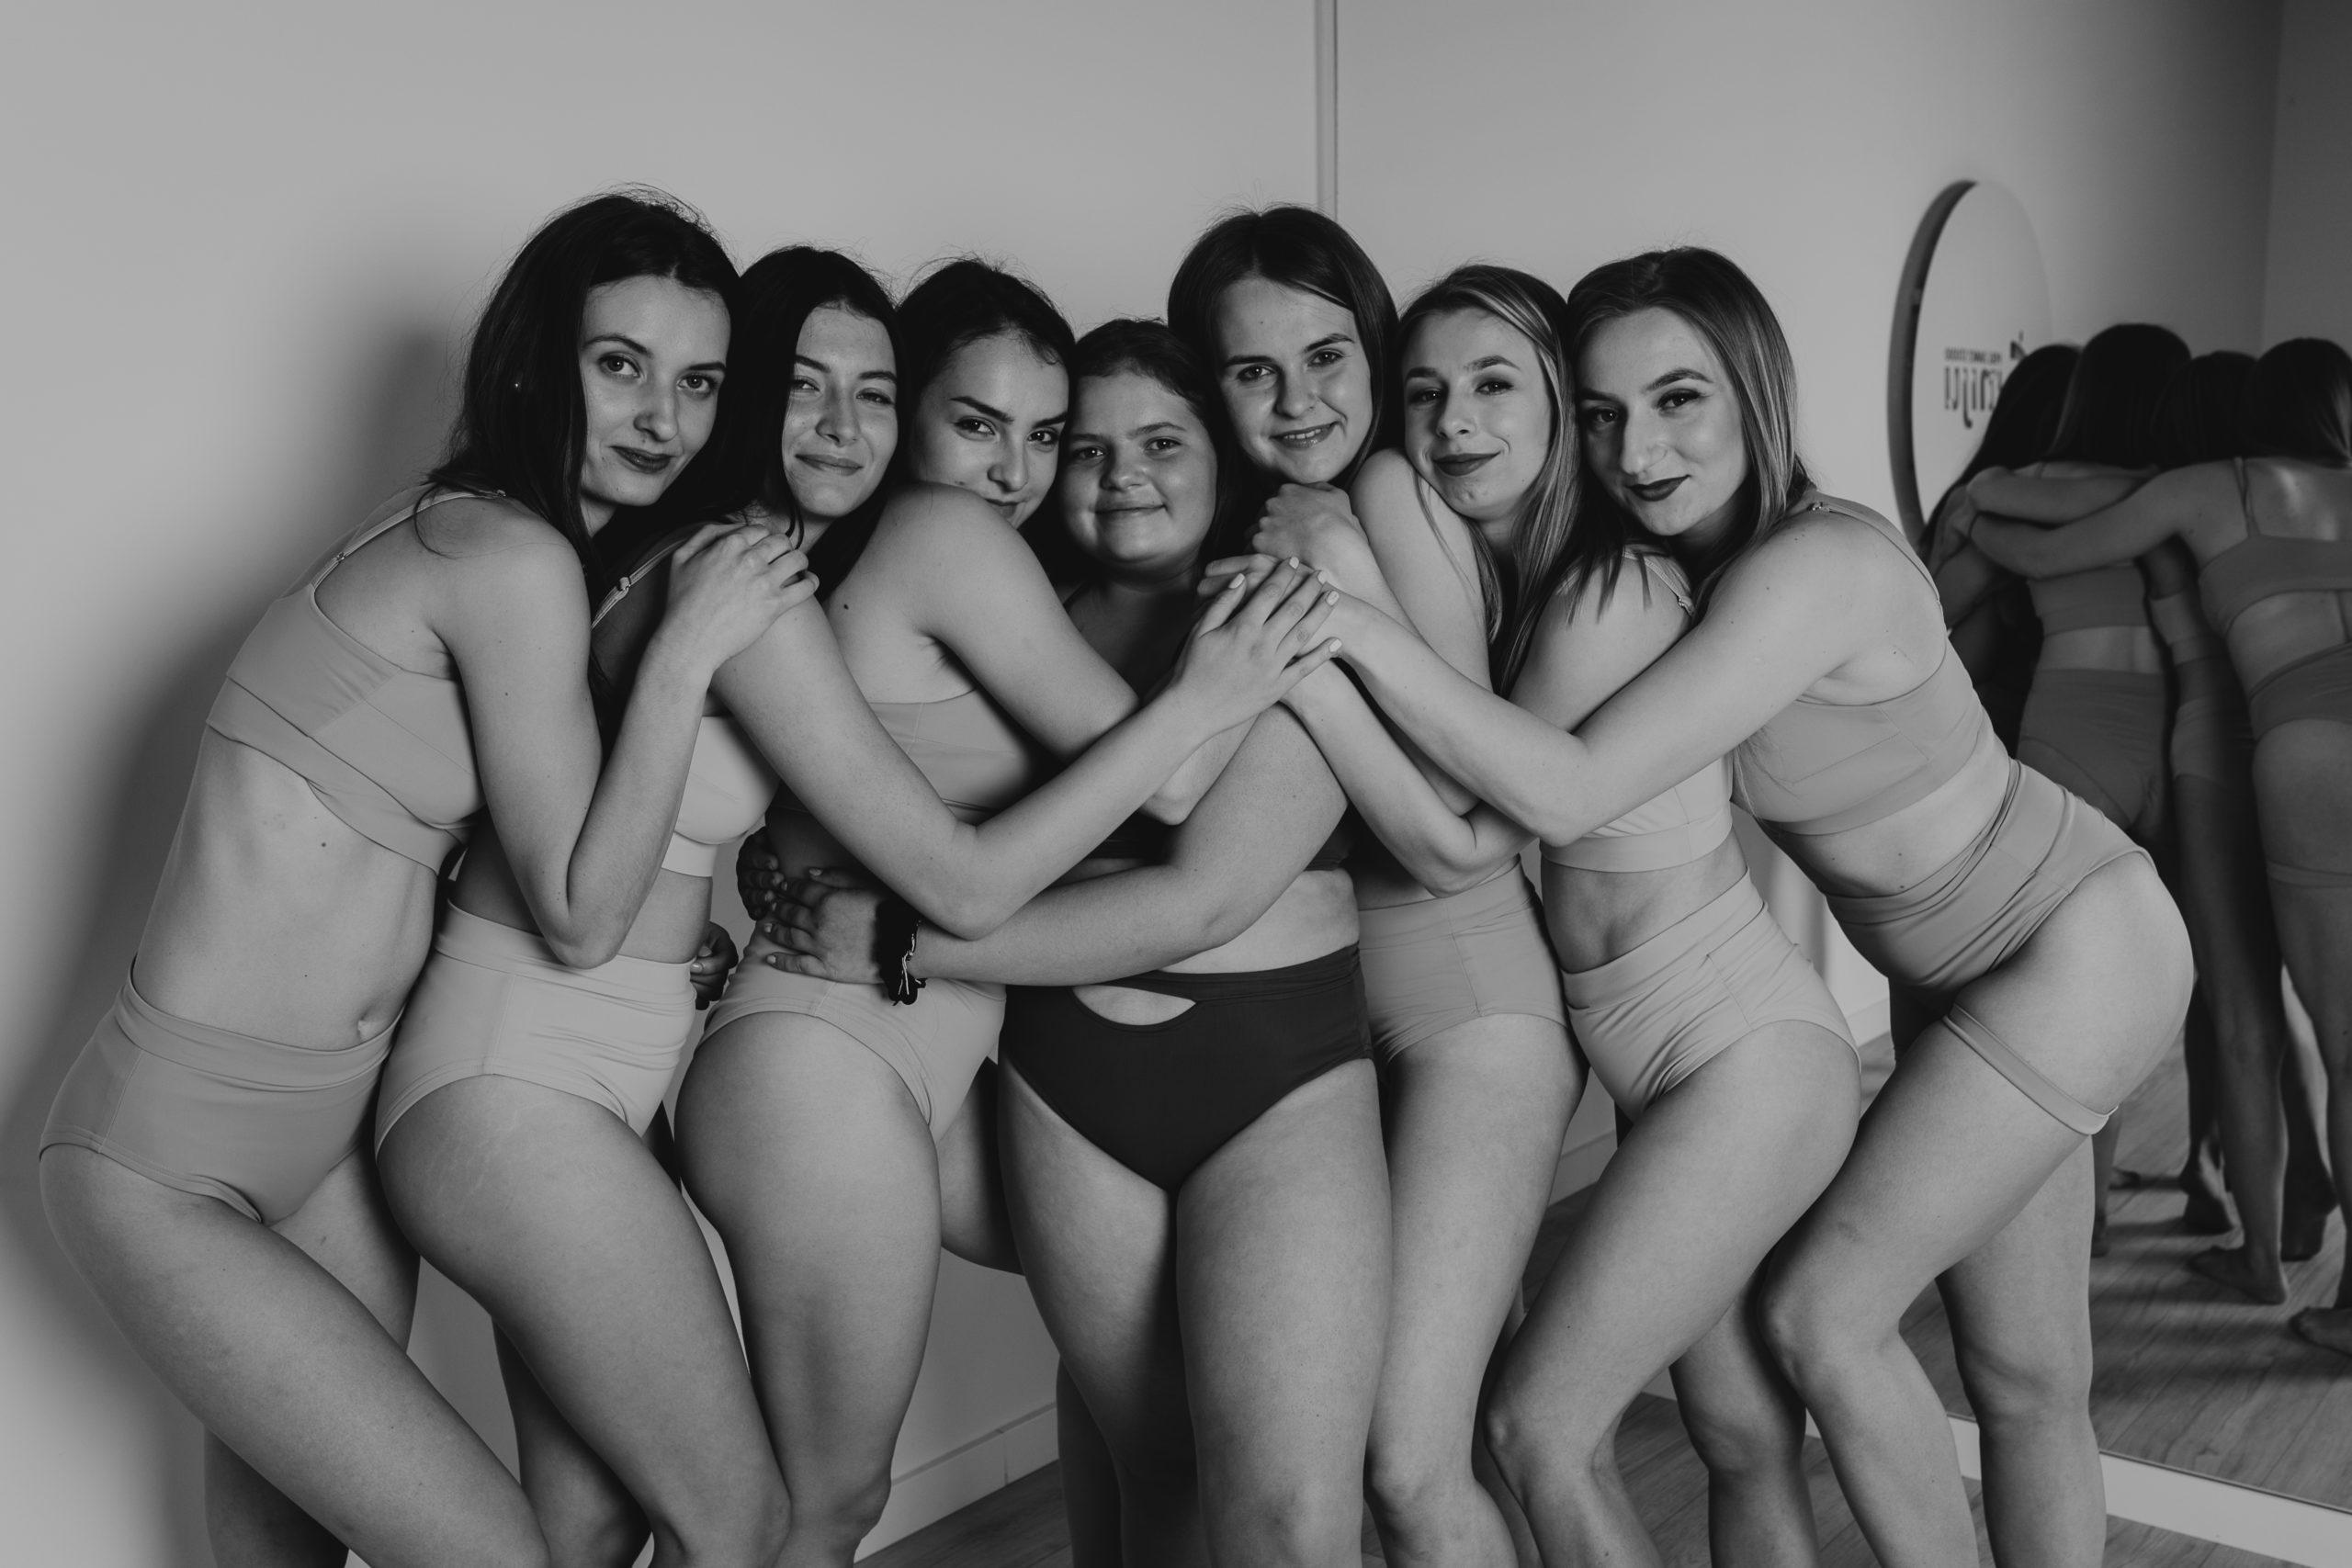 Dziewczyny stojące przodem do obiektywu i wtulone w siebie do grupowego zdjęcia